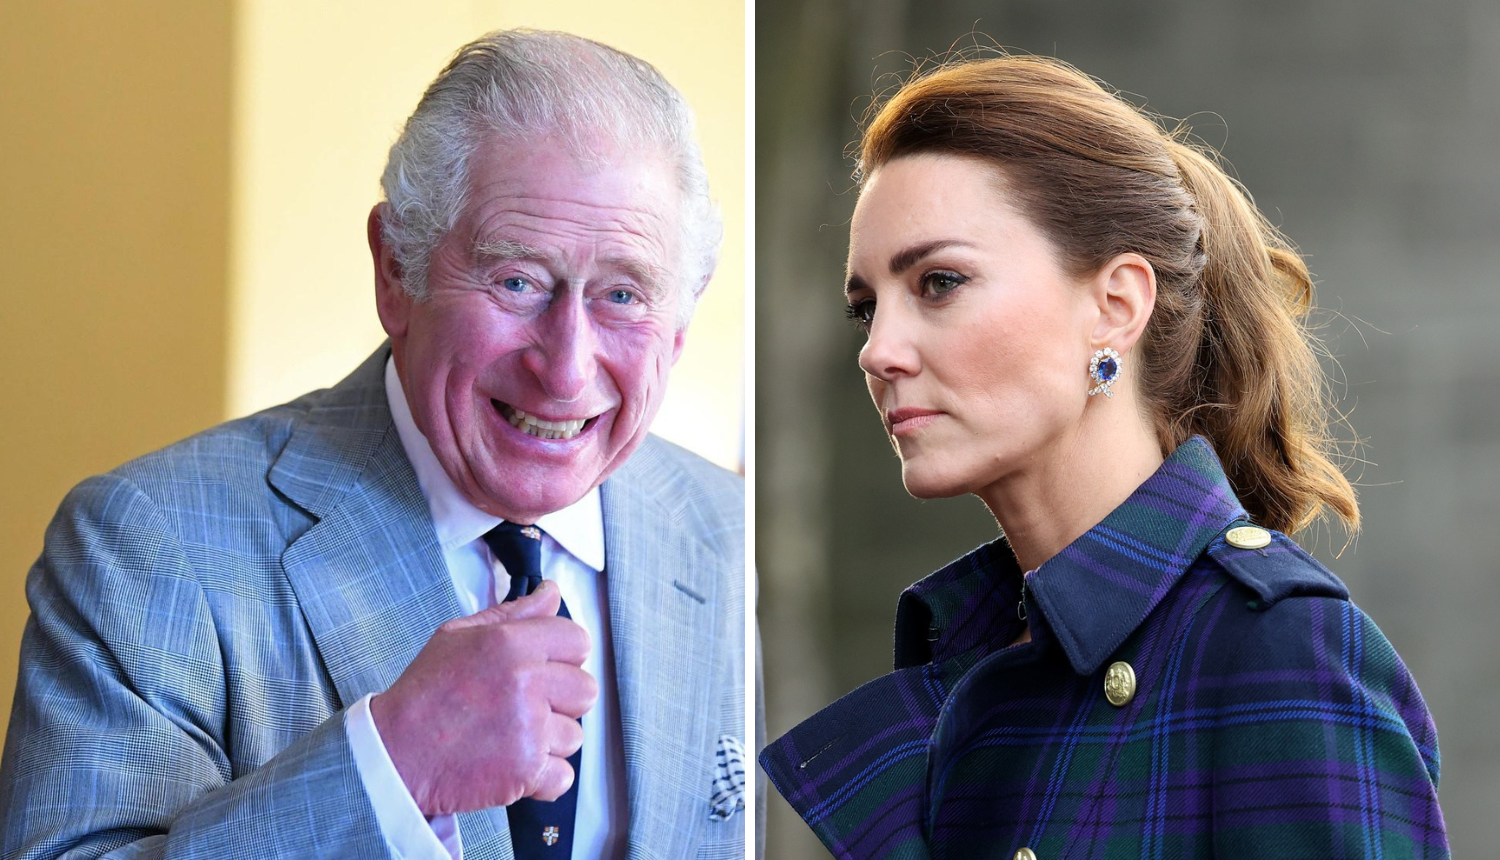 Kralj Charles III. zabranio je pripremu jela u kojem posebno uživa princeza Kate Middleton